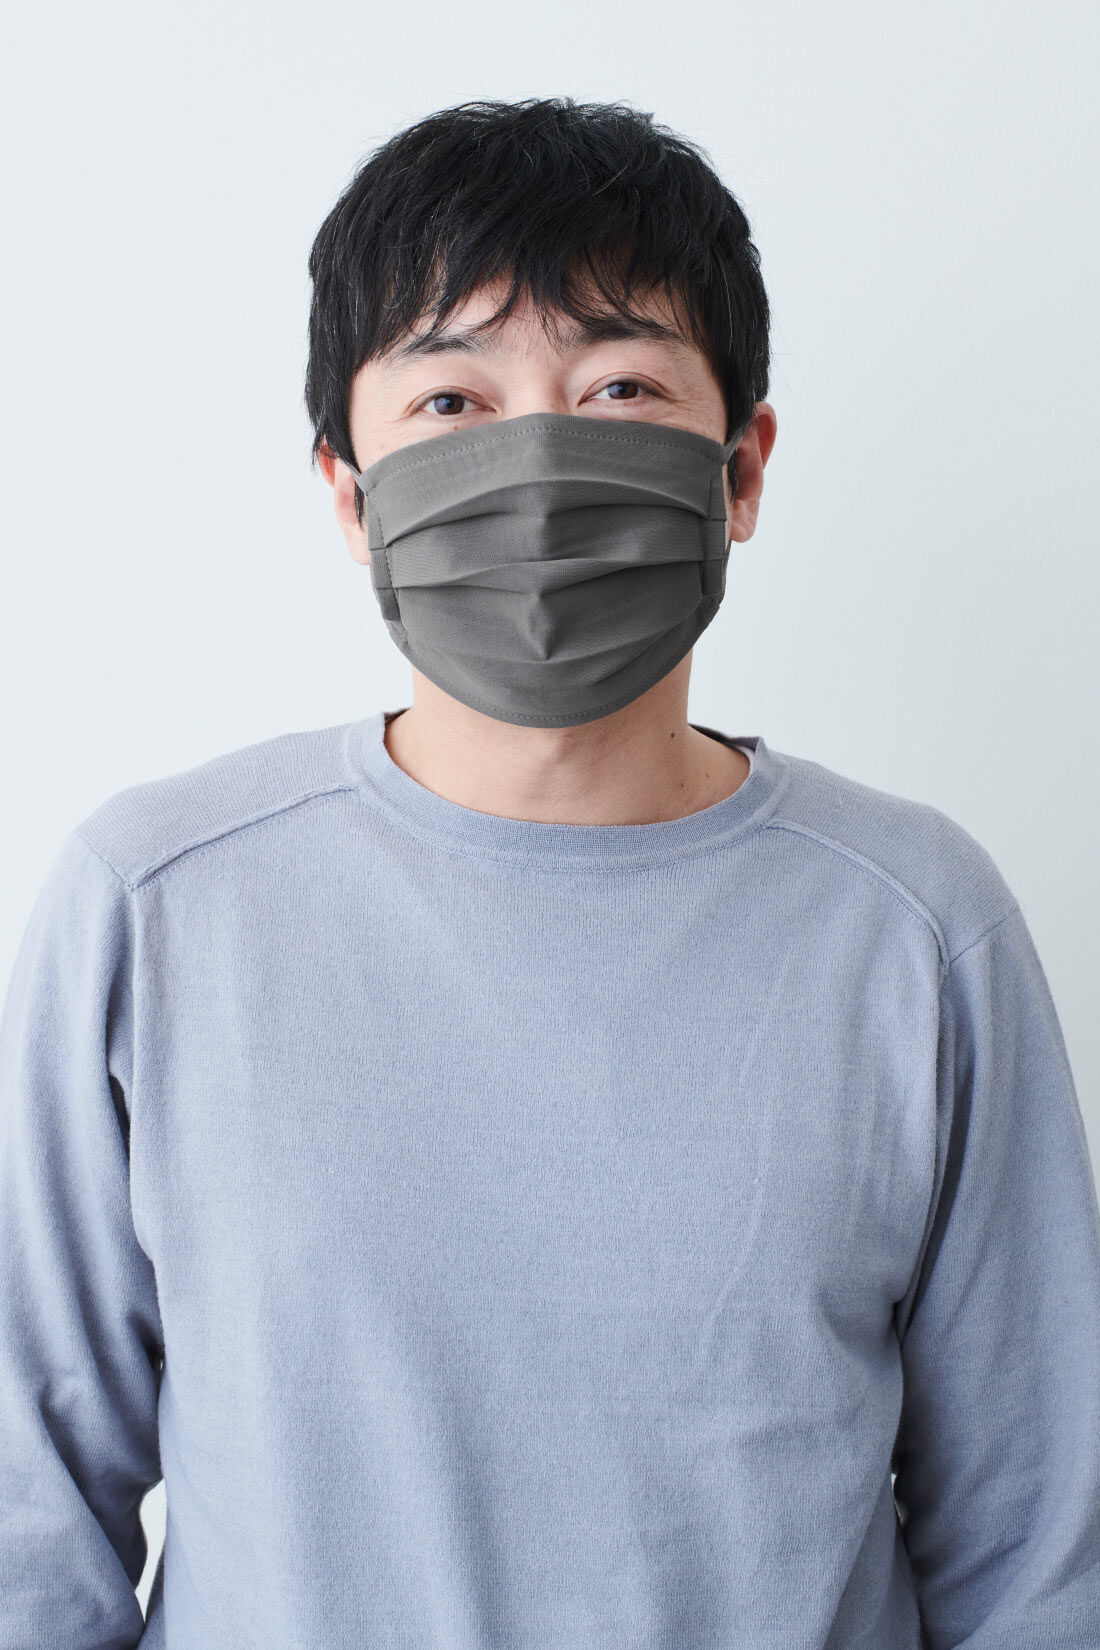 Real Stock|IEDIT[イディット]　日本の工場で作った UVケアなどの機能がうれしい やさしい肌ざわりの布プリーツマスク